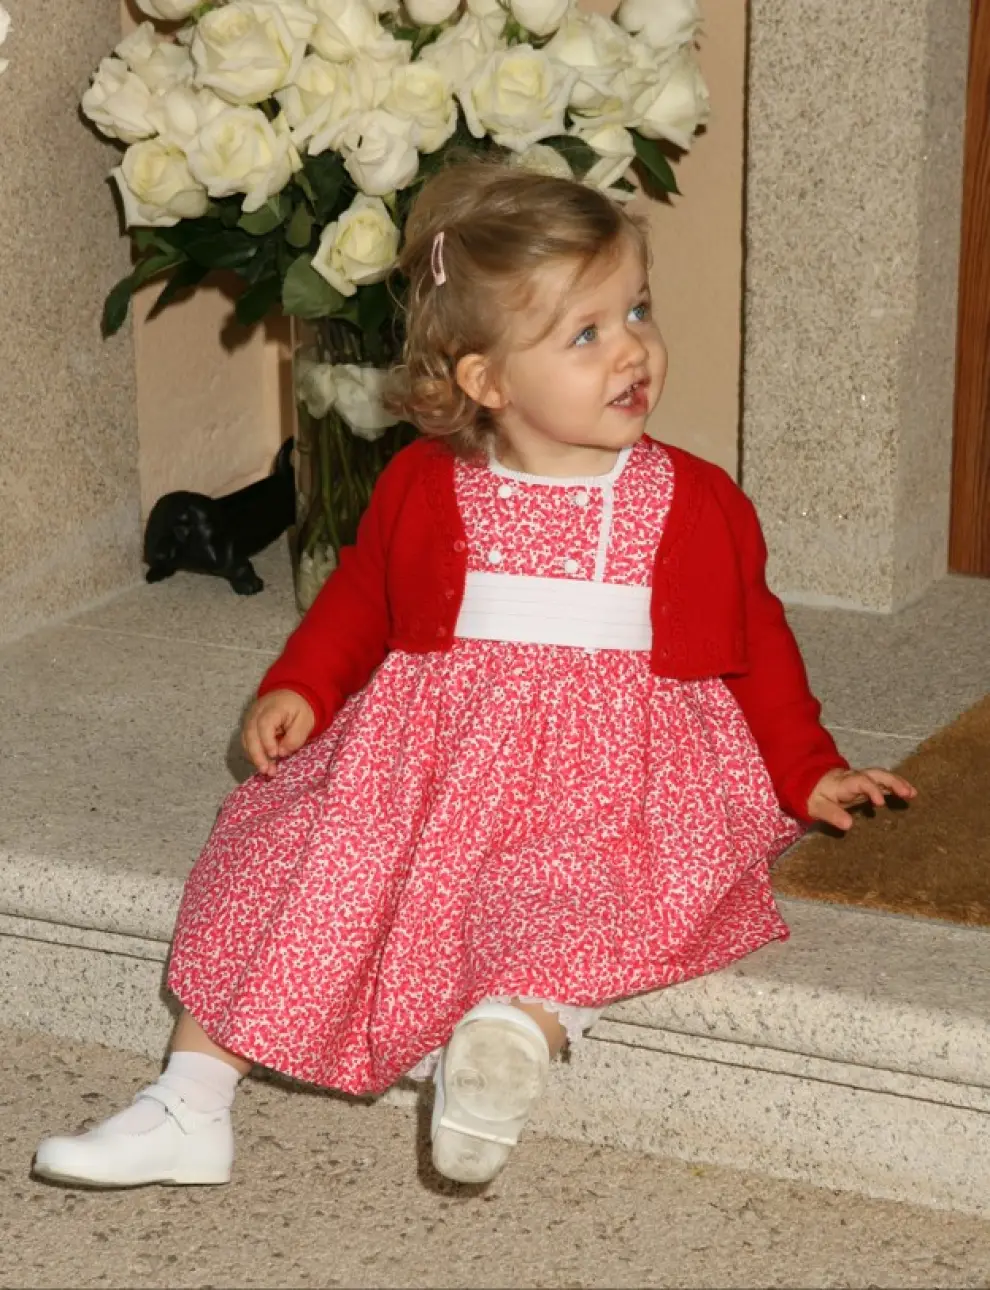 Leonor, en las escaleras del palacio de la Zarzuela el 4 de mayo de 2007, día de la presentación oficial de su hermana Sofía, nacida el 29 de abril.